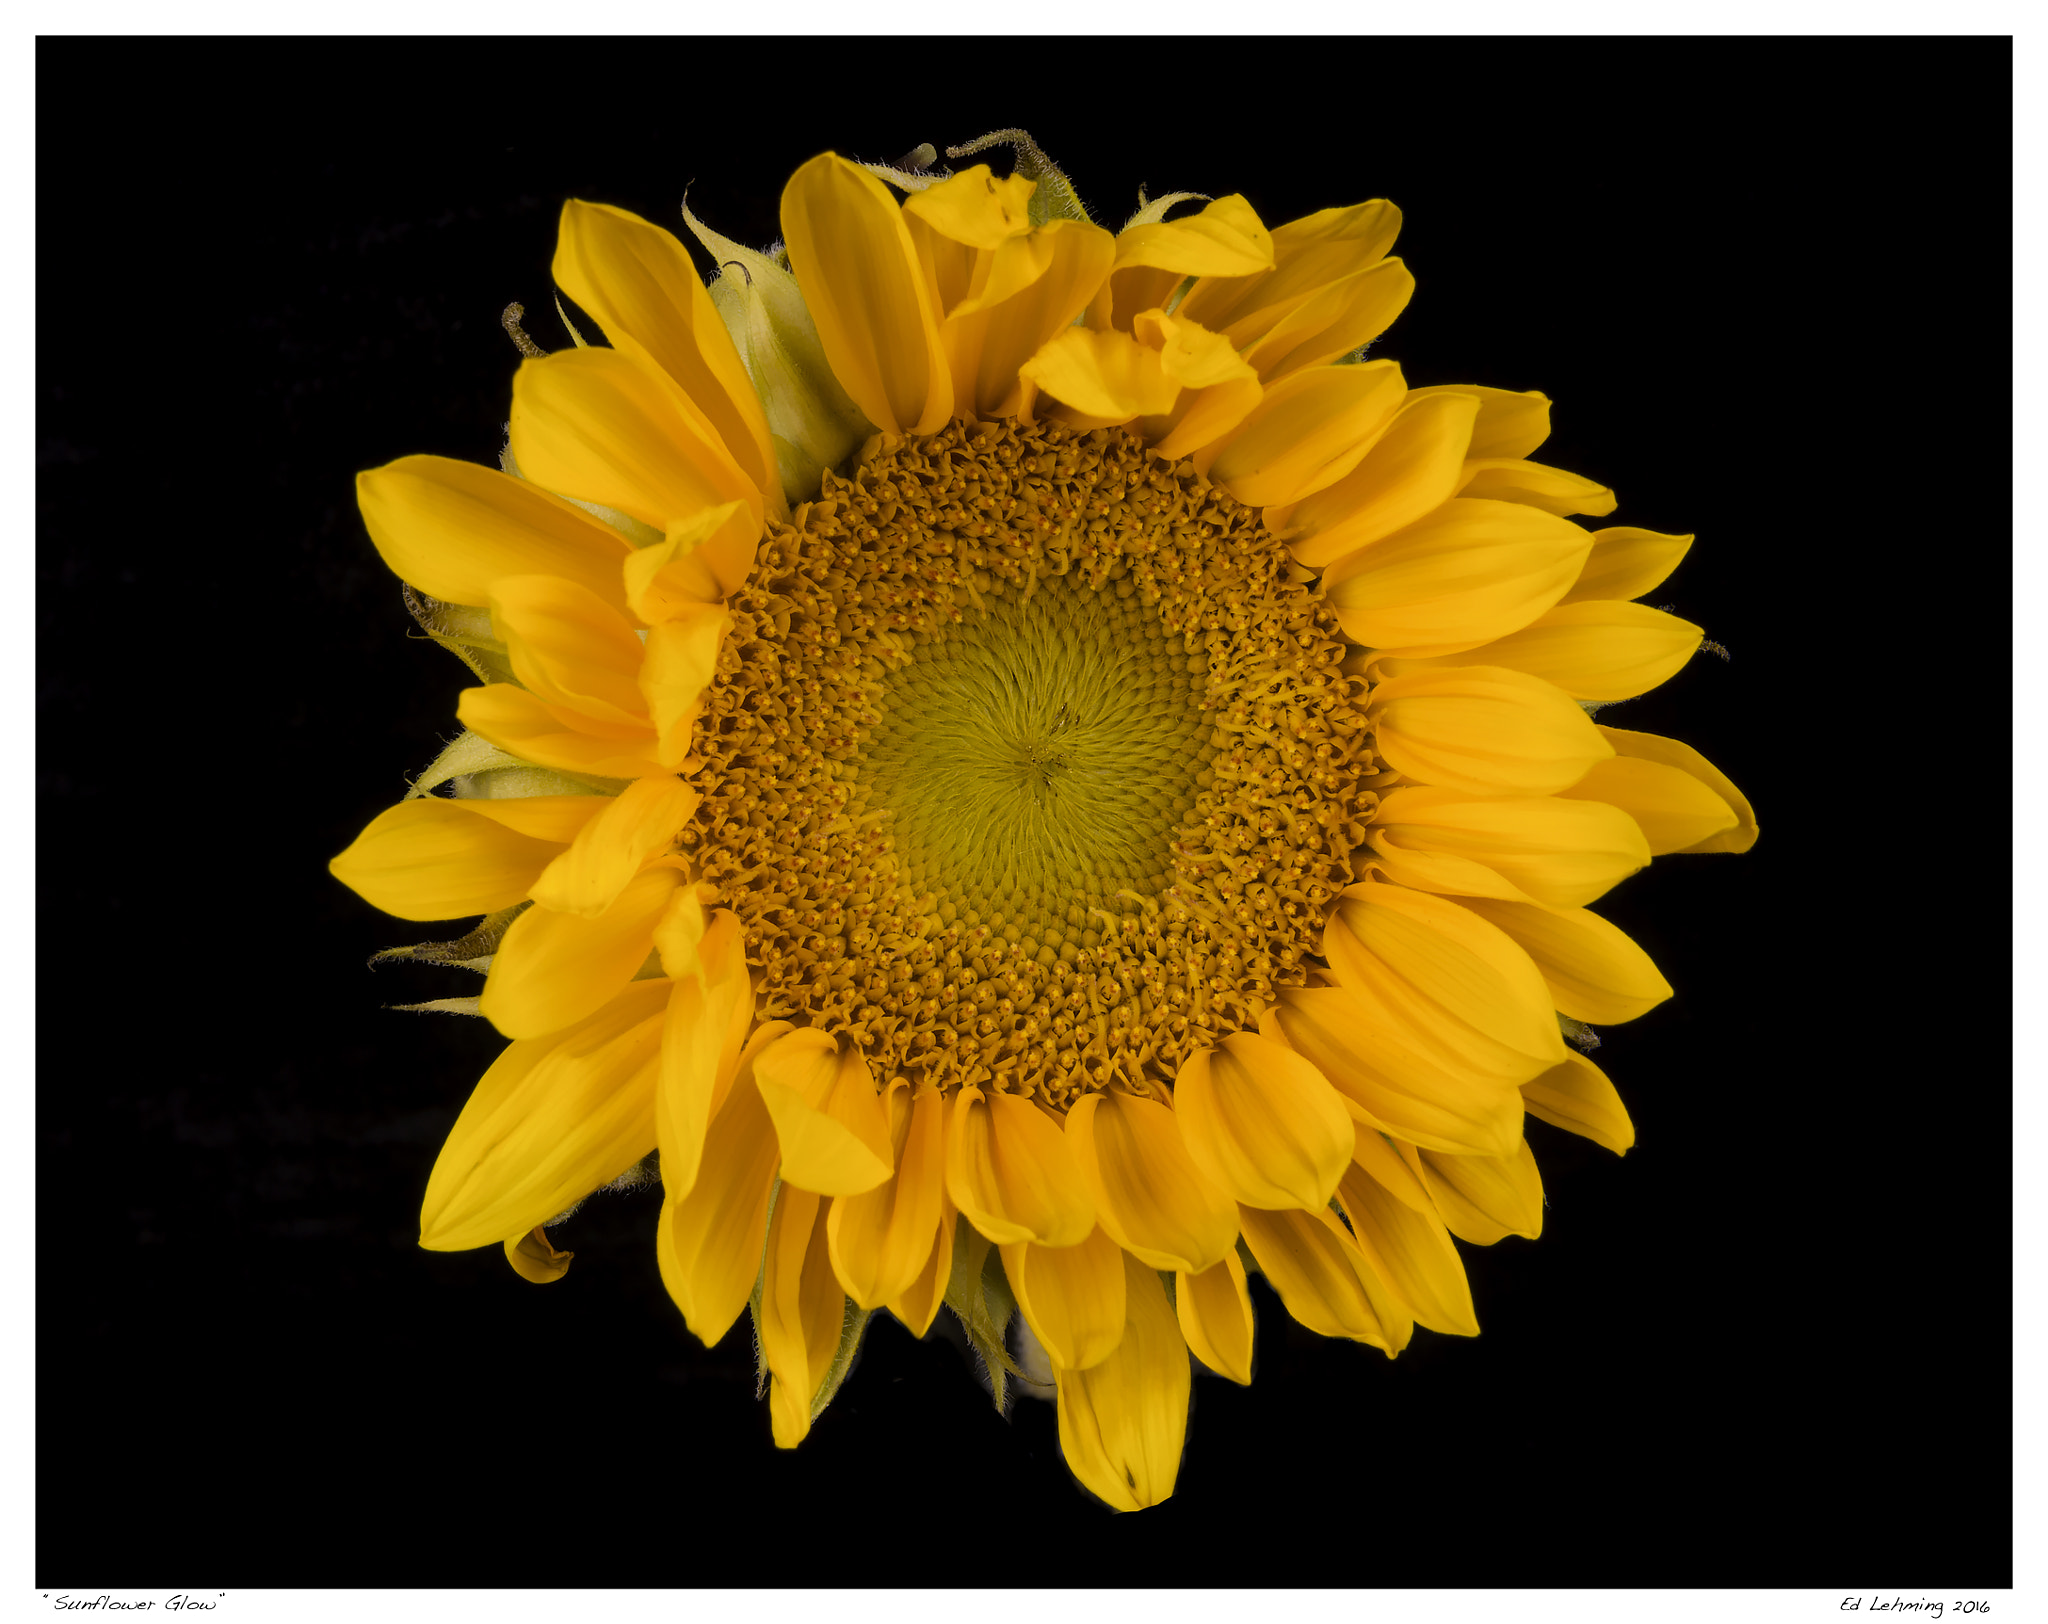 Nikon D800 + AF Zoom-Nikkor 28-70mm f/3.5-4.5D sample photo. Sunflower glow photography